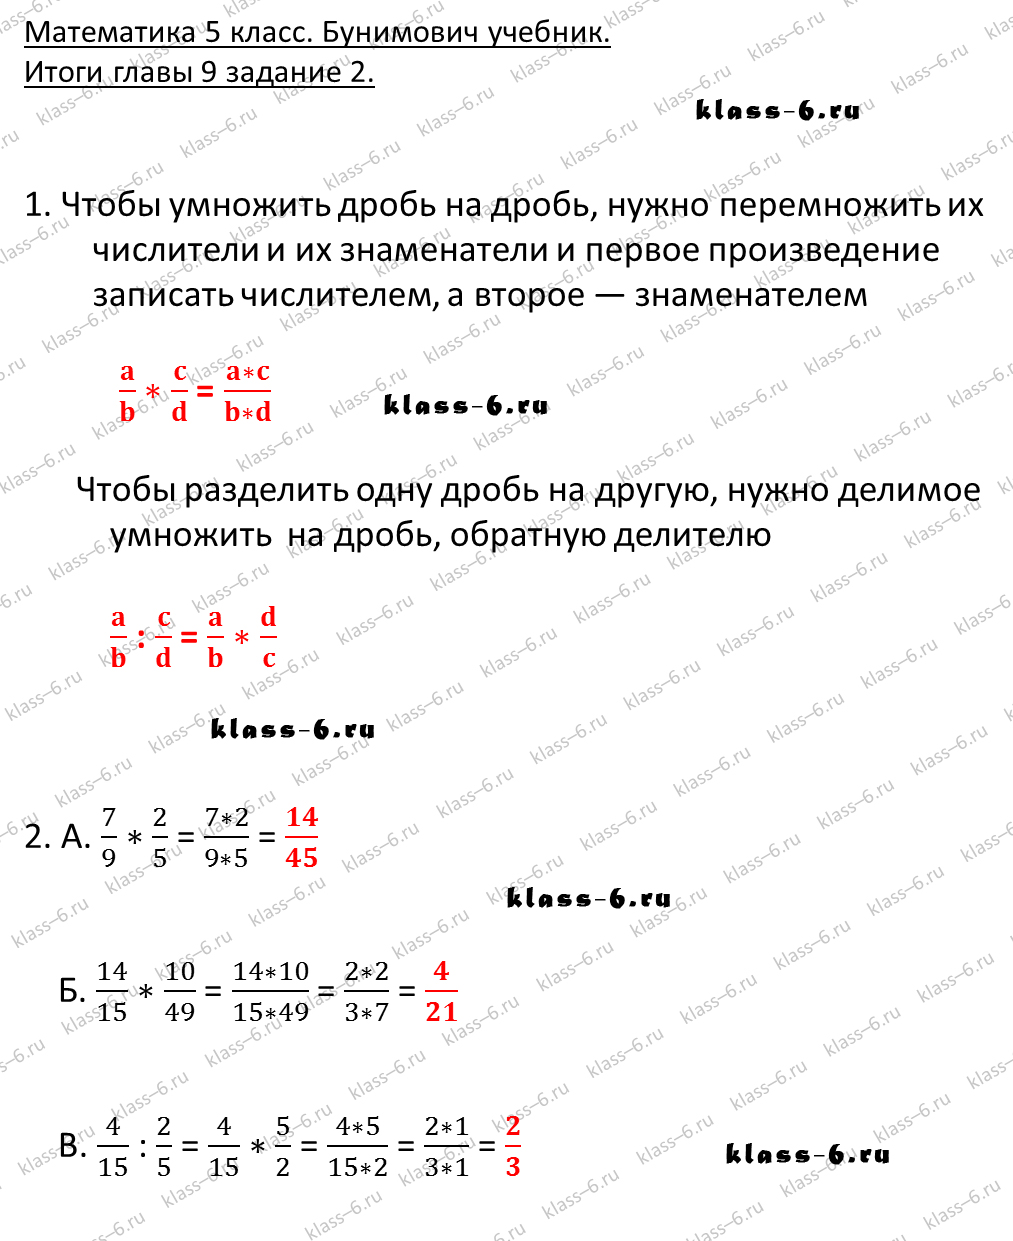 решебник и гдз по математике учебник Бунимович 5 класс итоги главы 9-2